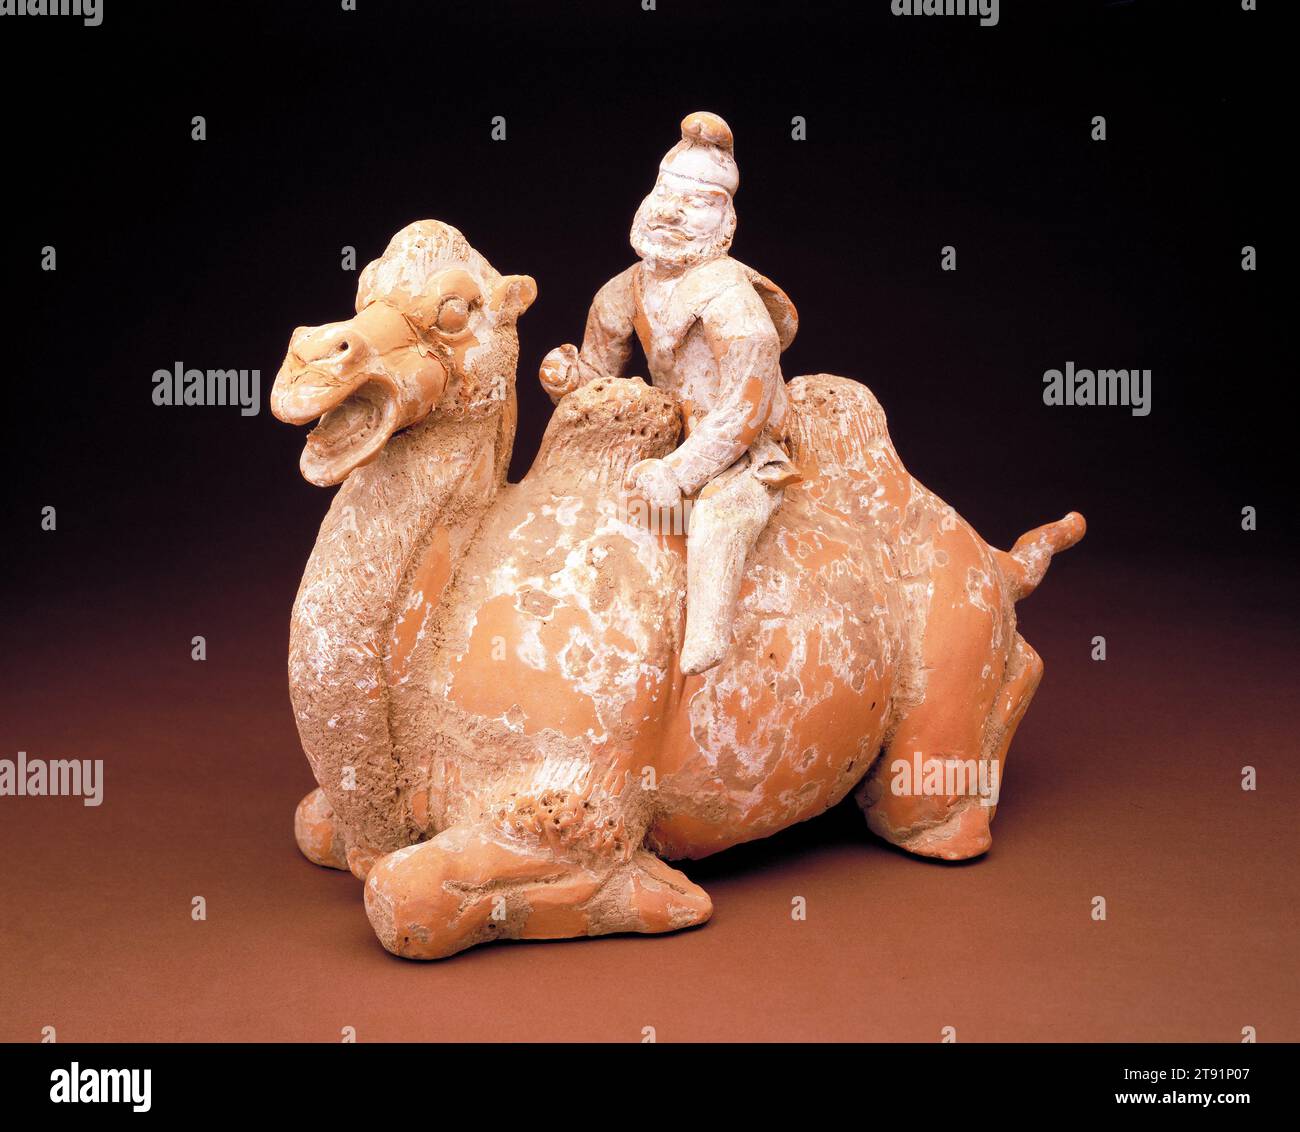 Tombe Figure d'un chameau agenouillé avec pilote, 618-906, 9 3/4 x 13 po. (24,77 x 33,02 cm), faïence rouge avec des traces de glissement et de polychromie, Chine, 7e-10e siècle, ce chameau de Bactriane bien modelé et son pilote d'Asie centrale reflètent la nature cosmopolite de l'art Tang Le chameau était la principale bête du fardeau le long des grandes routes caravanières qui reliaient la Chine Tang à l'Asie centrale et au Moyen-Orient. Cette bête sournoise, ainsi que les différents peuples étrangers qui envahissaient les grands marchés de CH'ang-an et Lo-yang, sont devenus des sujets favoris et exotiques pour les potiers Tang observants Banque D'Images